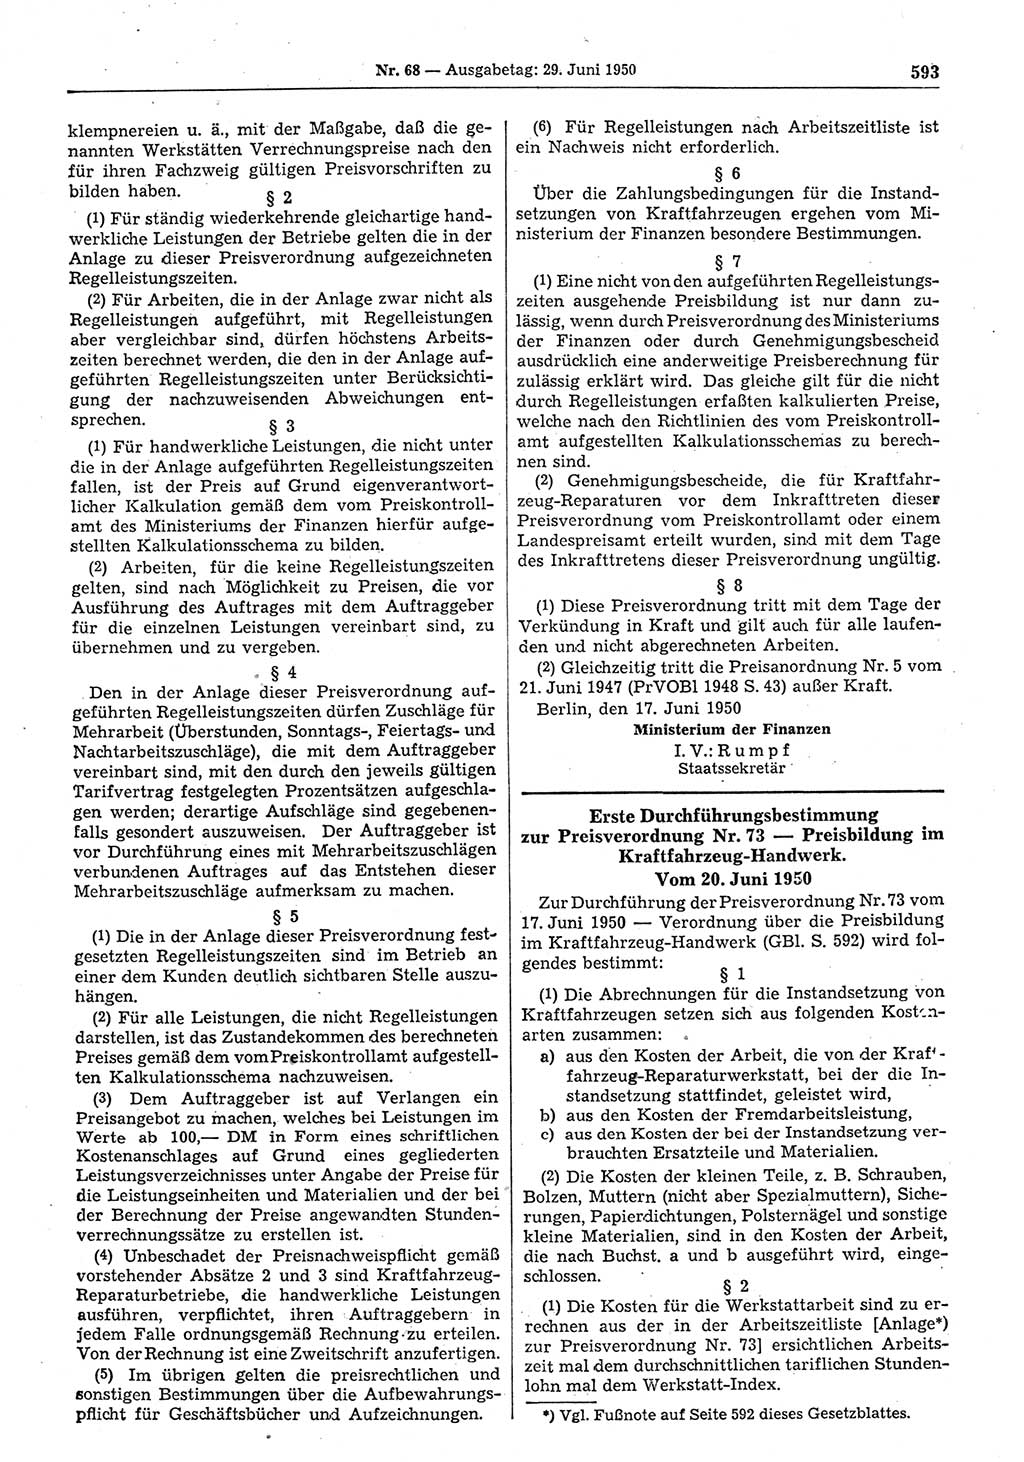 Gesetzblatt (GBl.) der Deutschen Demokratischen Republik (DDR) 1950, Seite 593 (GBl. DDR 1950, S. 593)